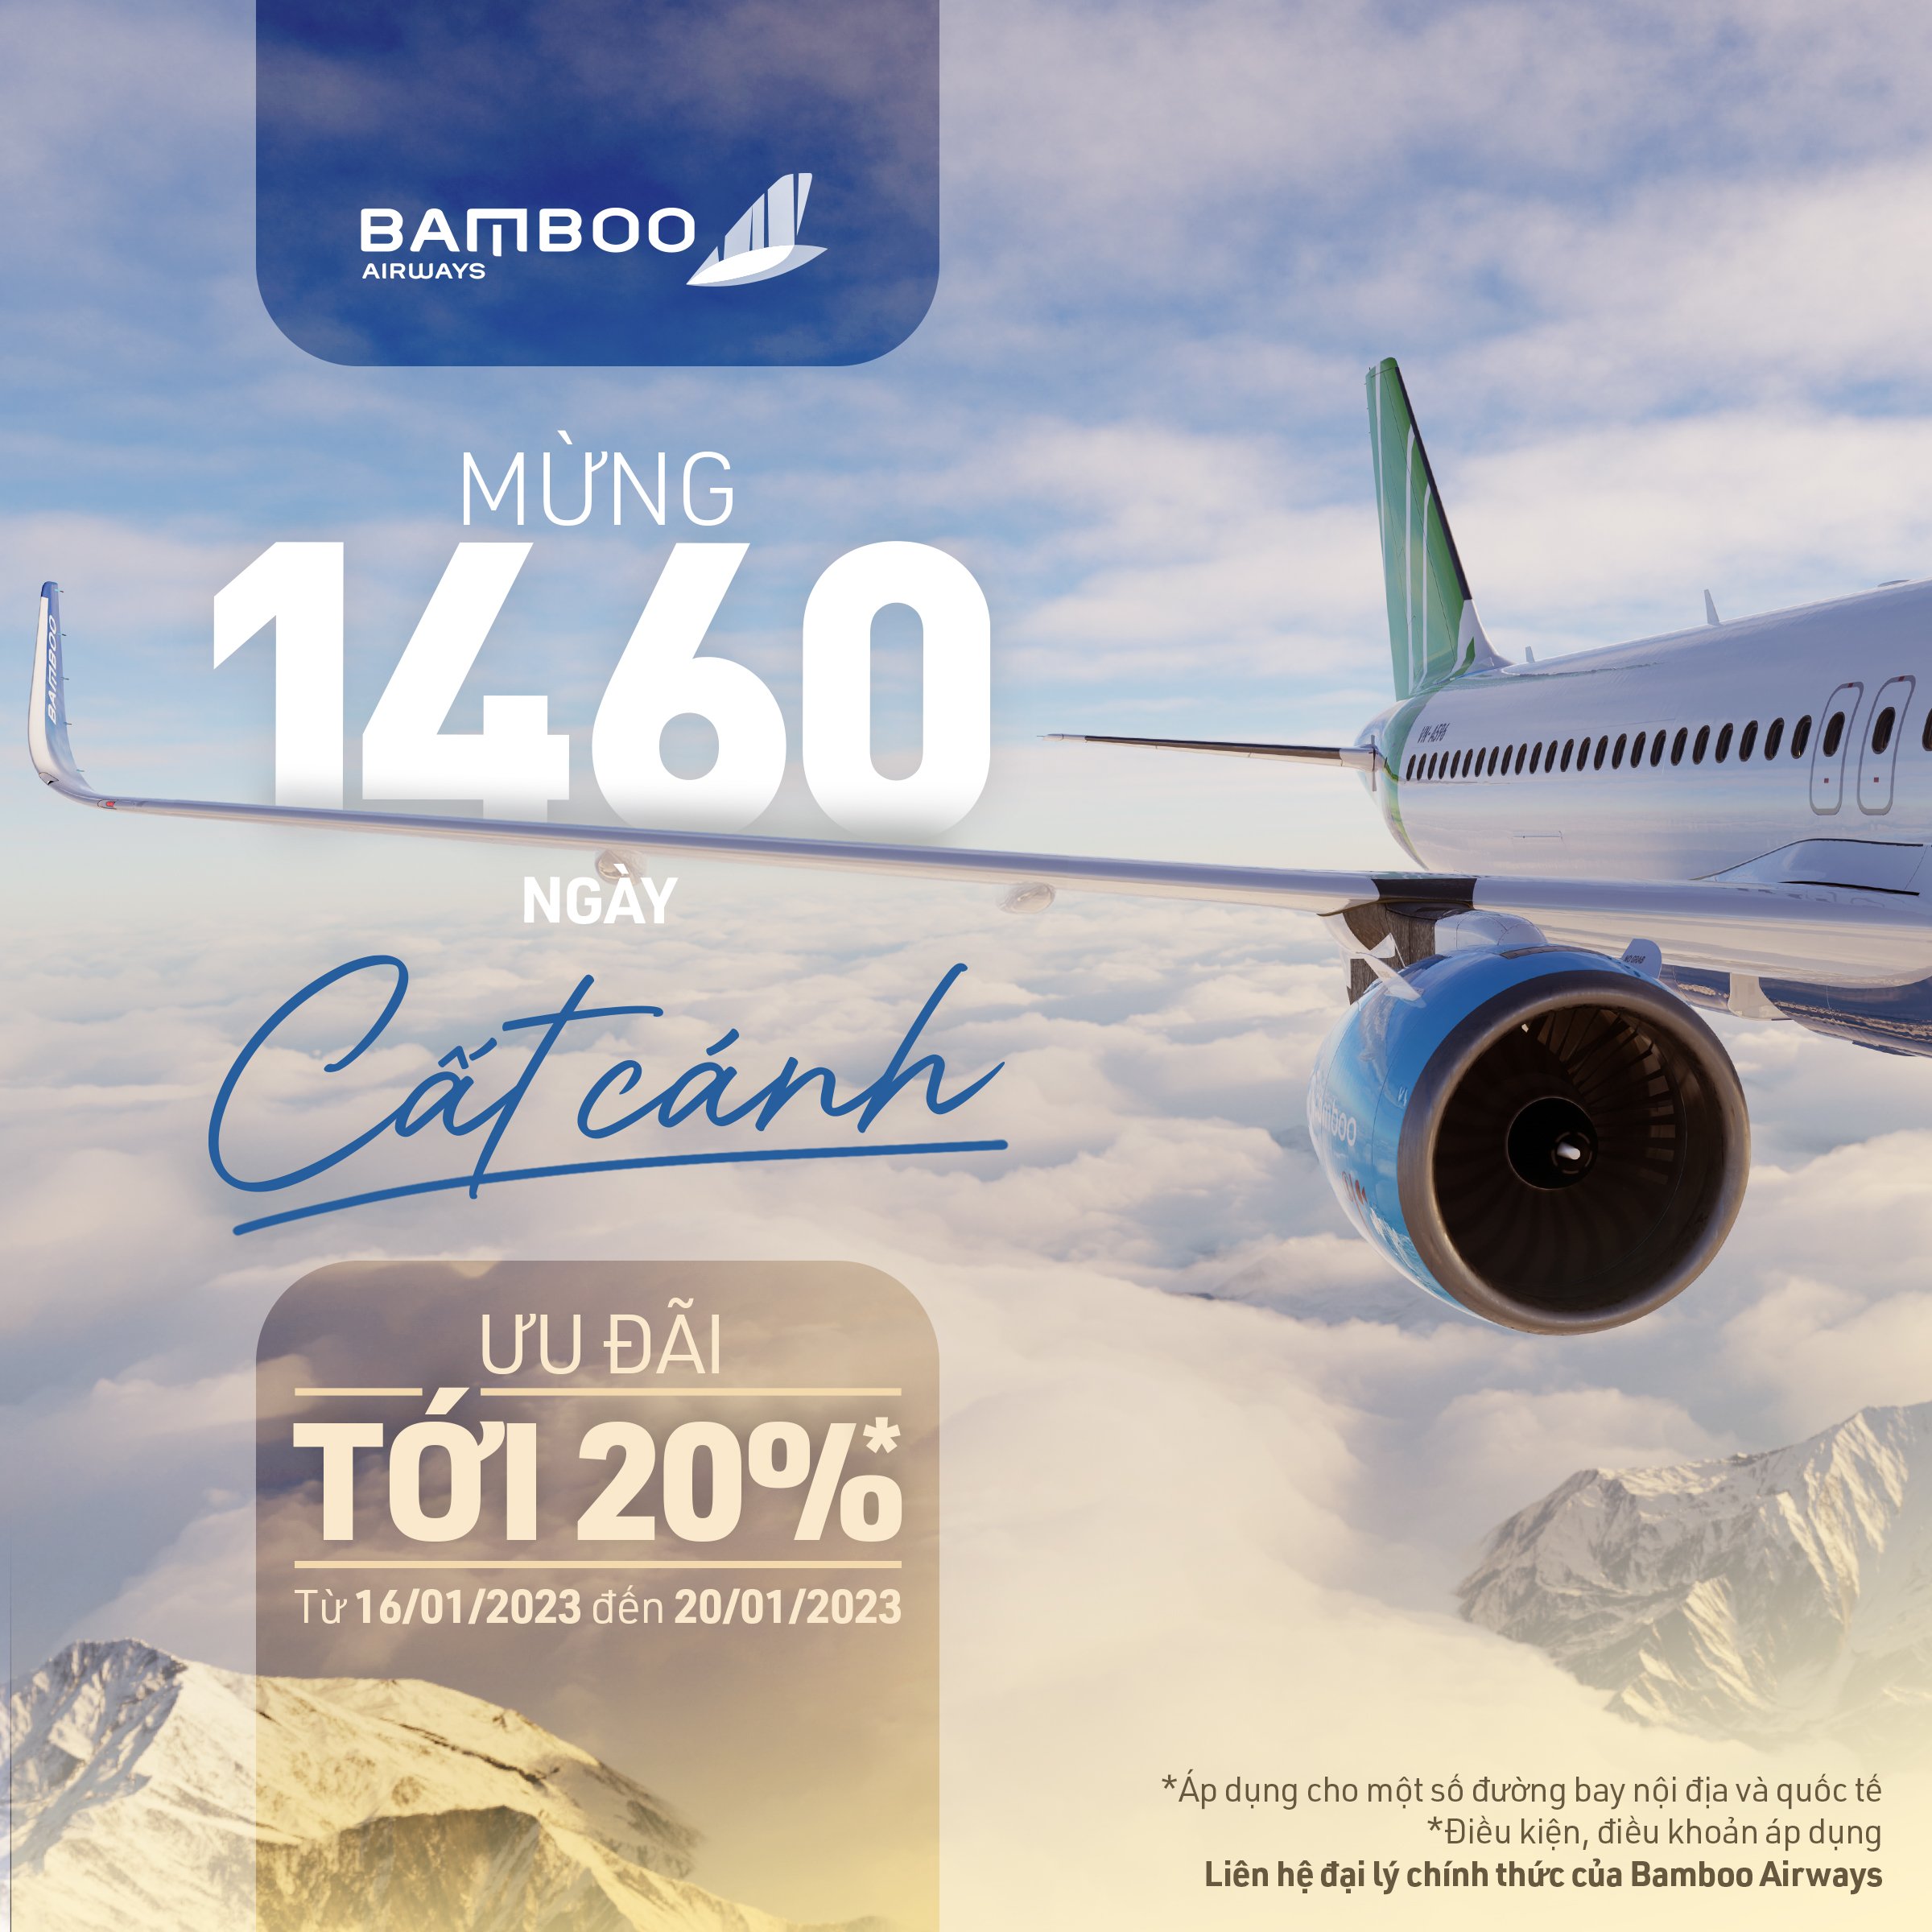 BAMBOO AIRWAYS_THÔNG BÁO TRIỂN KHAI CHƯƠNG TRÌNH KỈ NIỆM 1460 NGÀY CẤT CÁNH BAMBOO AIRWAYS